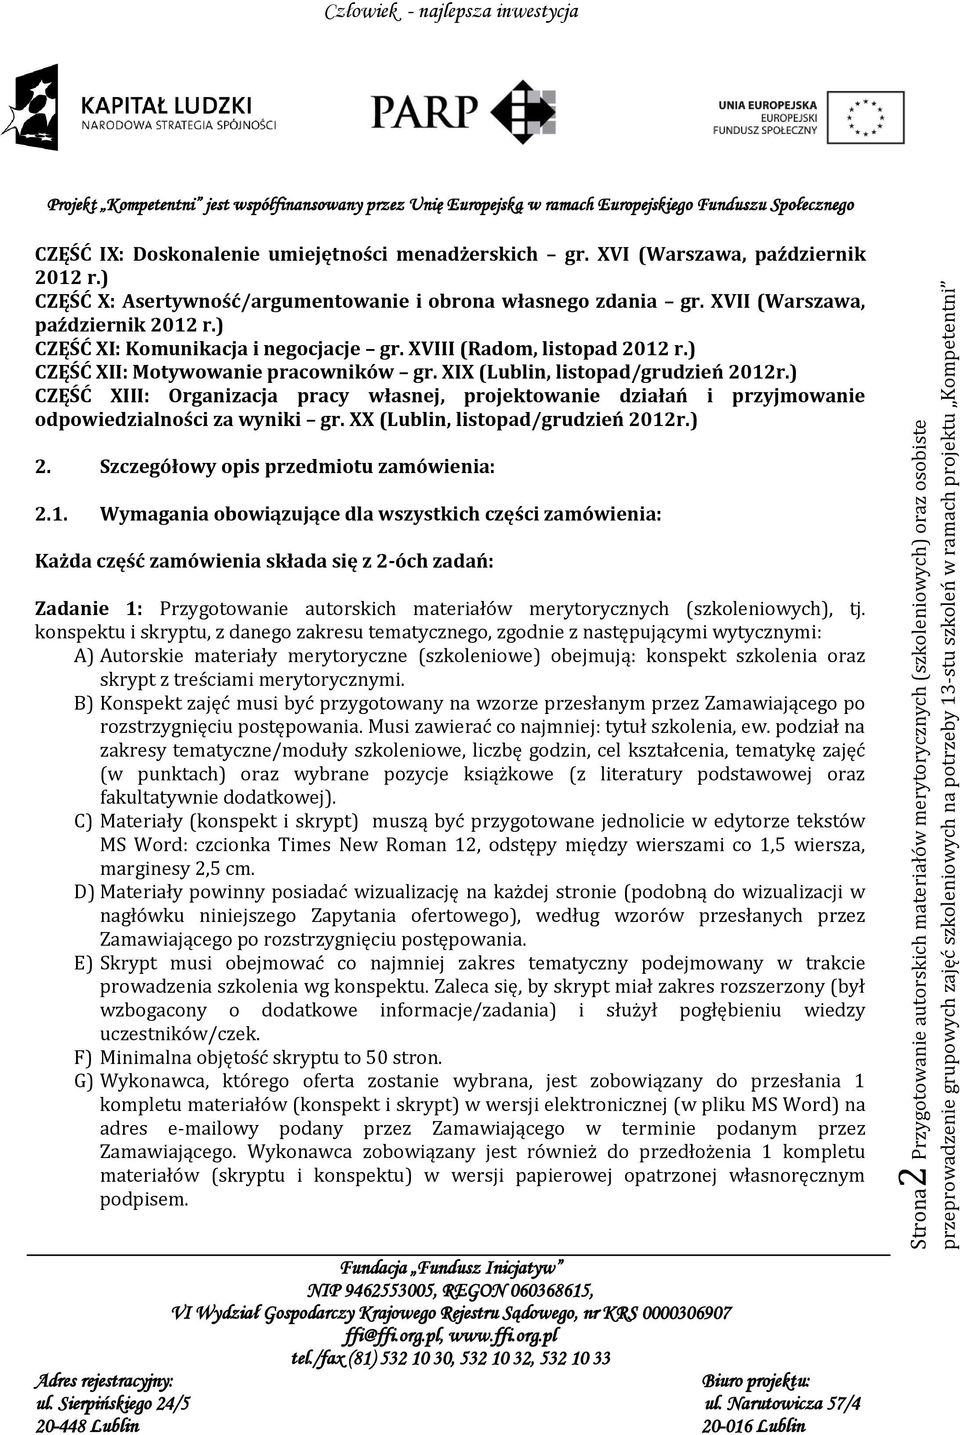 ) CZĘŚĆ XIII: Organizacja pracy własnej, projektowanie działań i przyjmowanie odpowiedzialności za wyniki gr. XX (Lublin, listopad/grudzień 2012